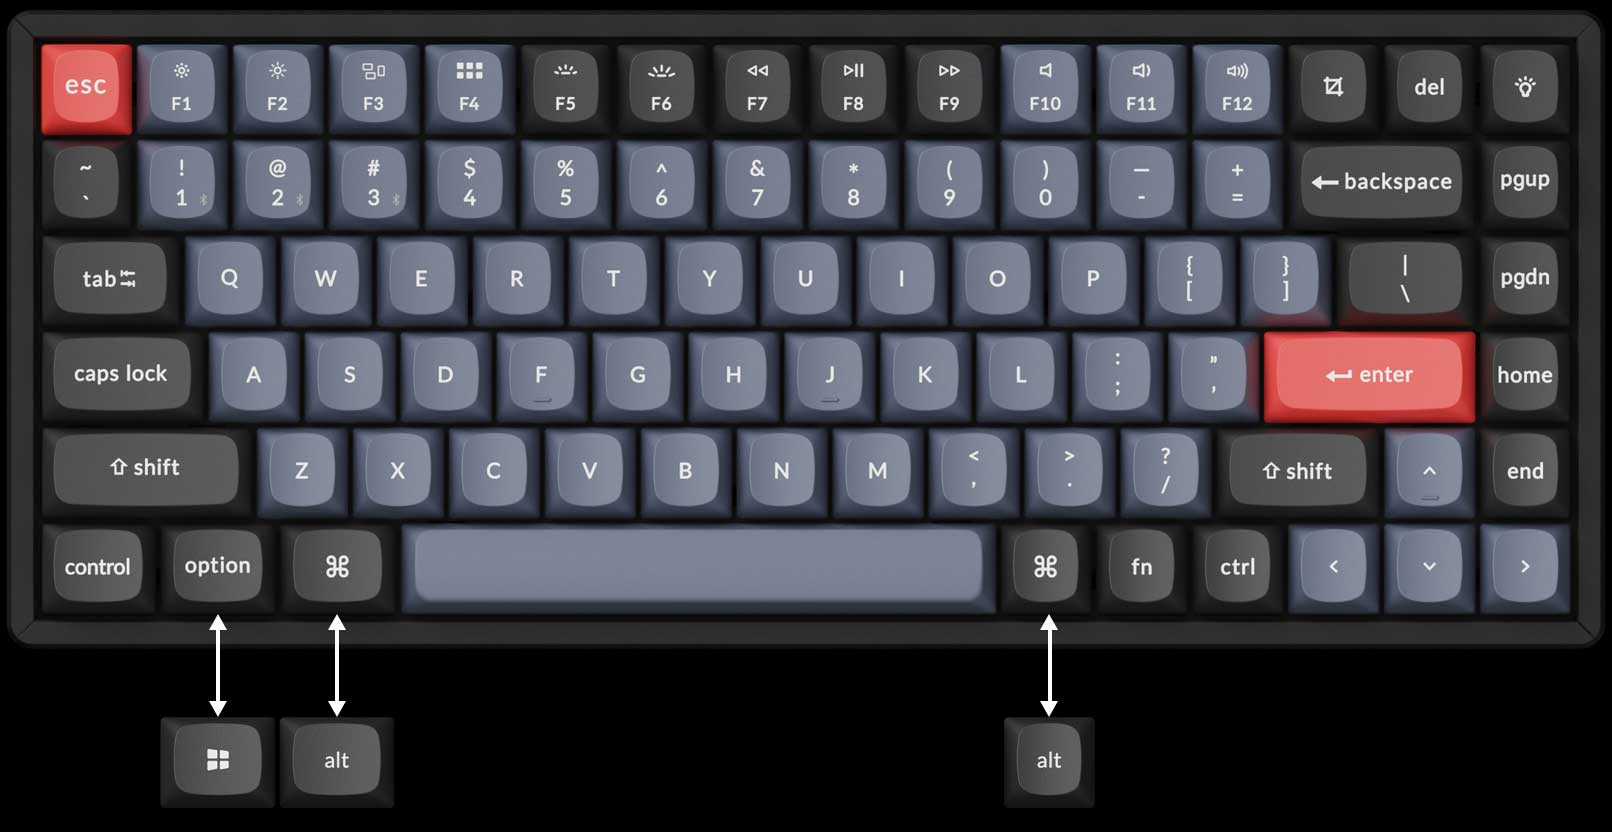 Keychron K2 Pro keyboard layout